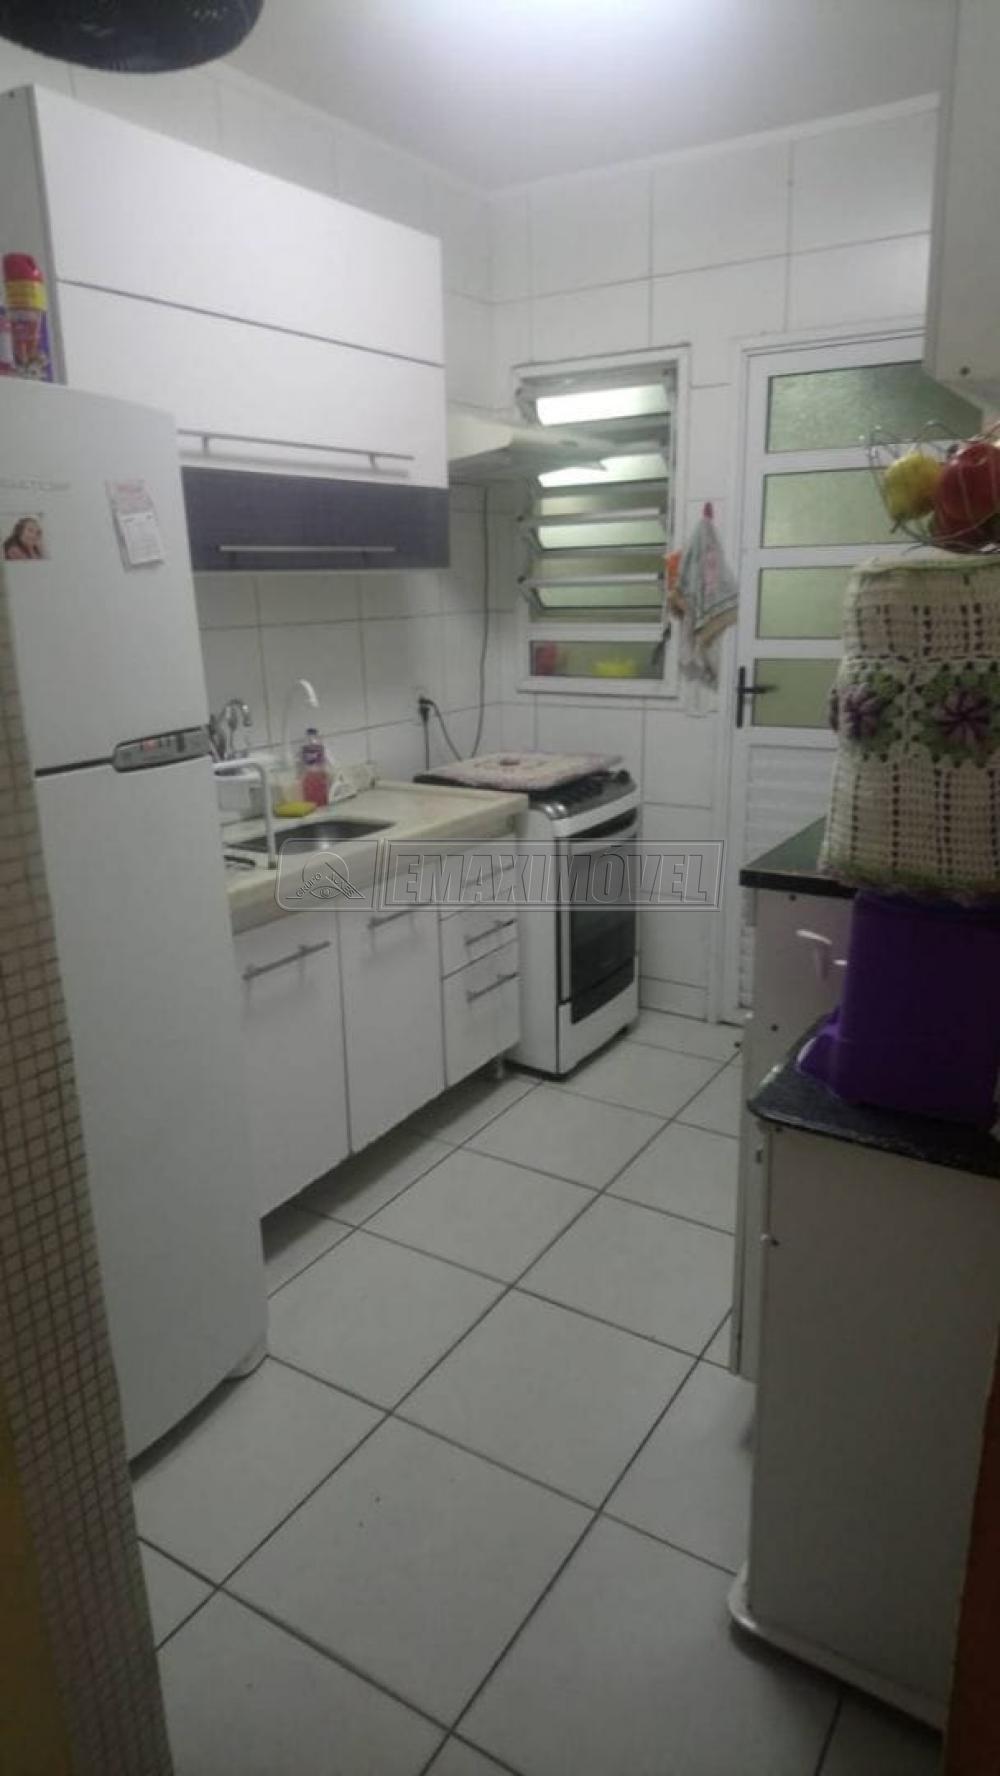 Comprar Casa / em Condomínios em Sorocaba R$ 225.000,00 - Foto 3